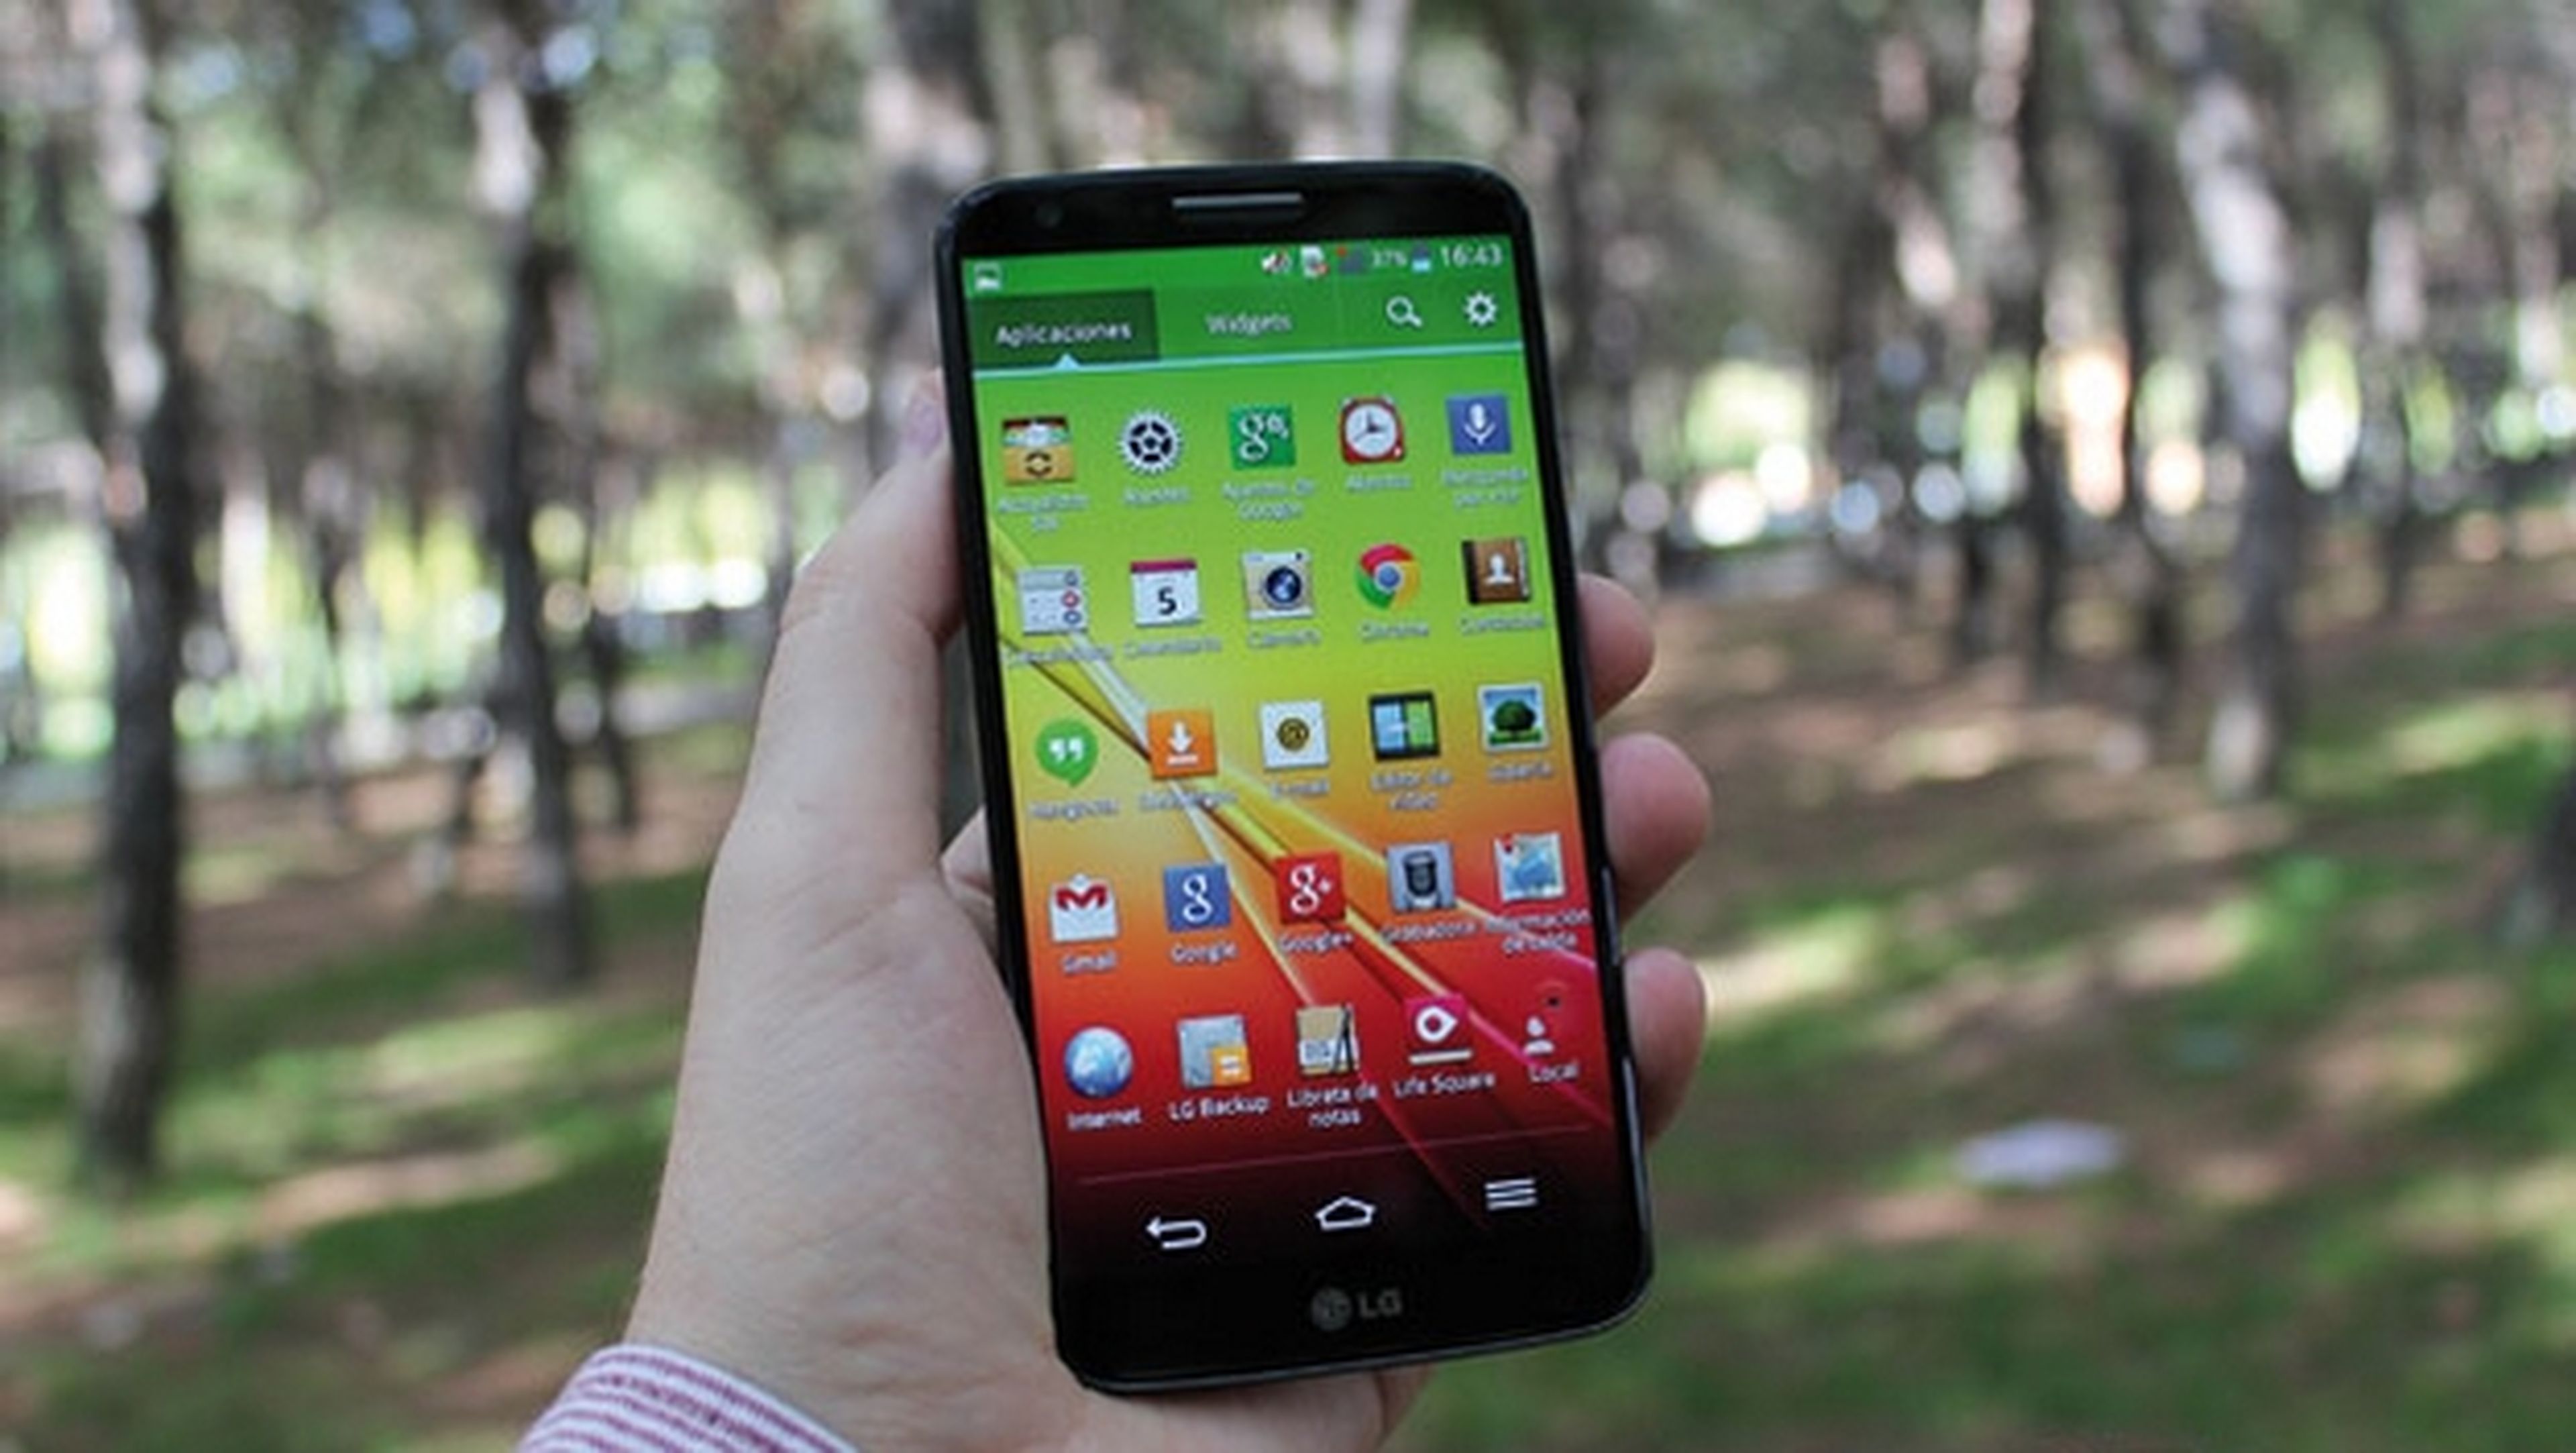 El smartphone LG G3 podría salir a la venta el 17 de mayo, para competir con el Samsung Galaxy S5